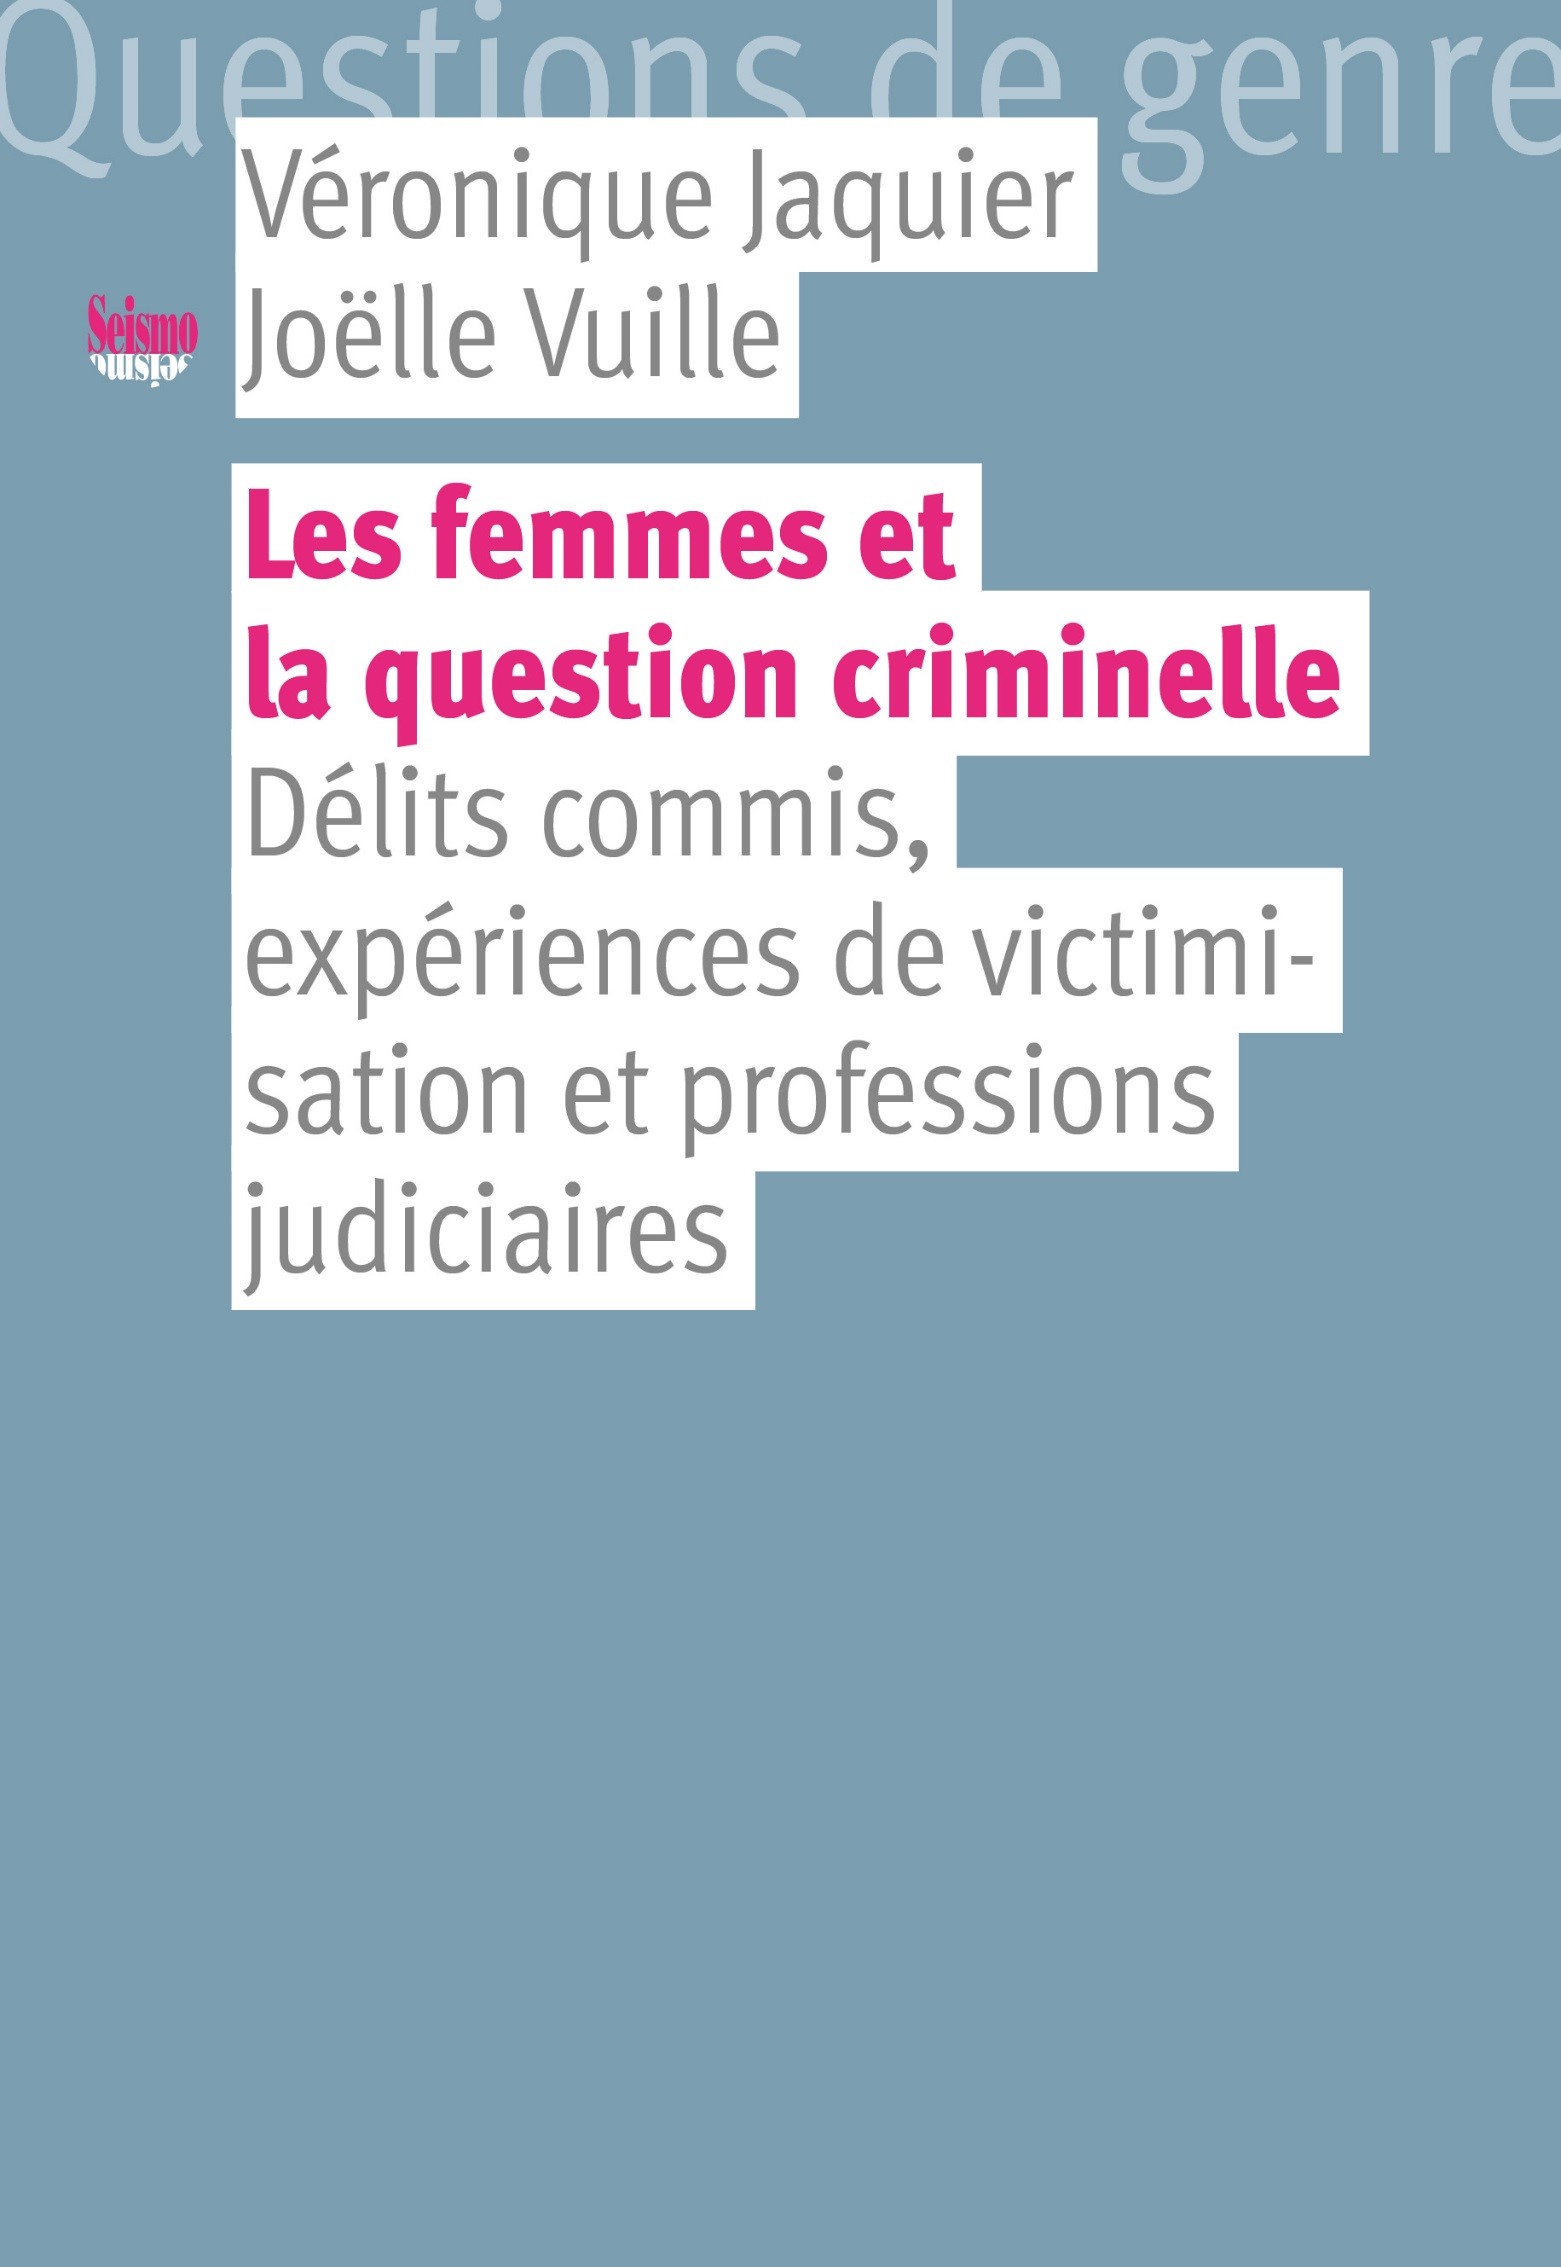 FemmesQCriminelle.jpg